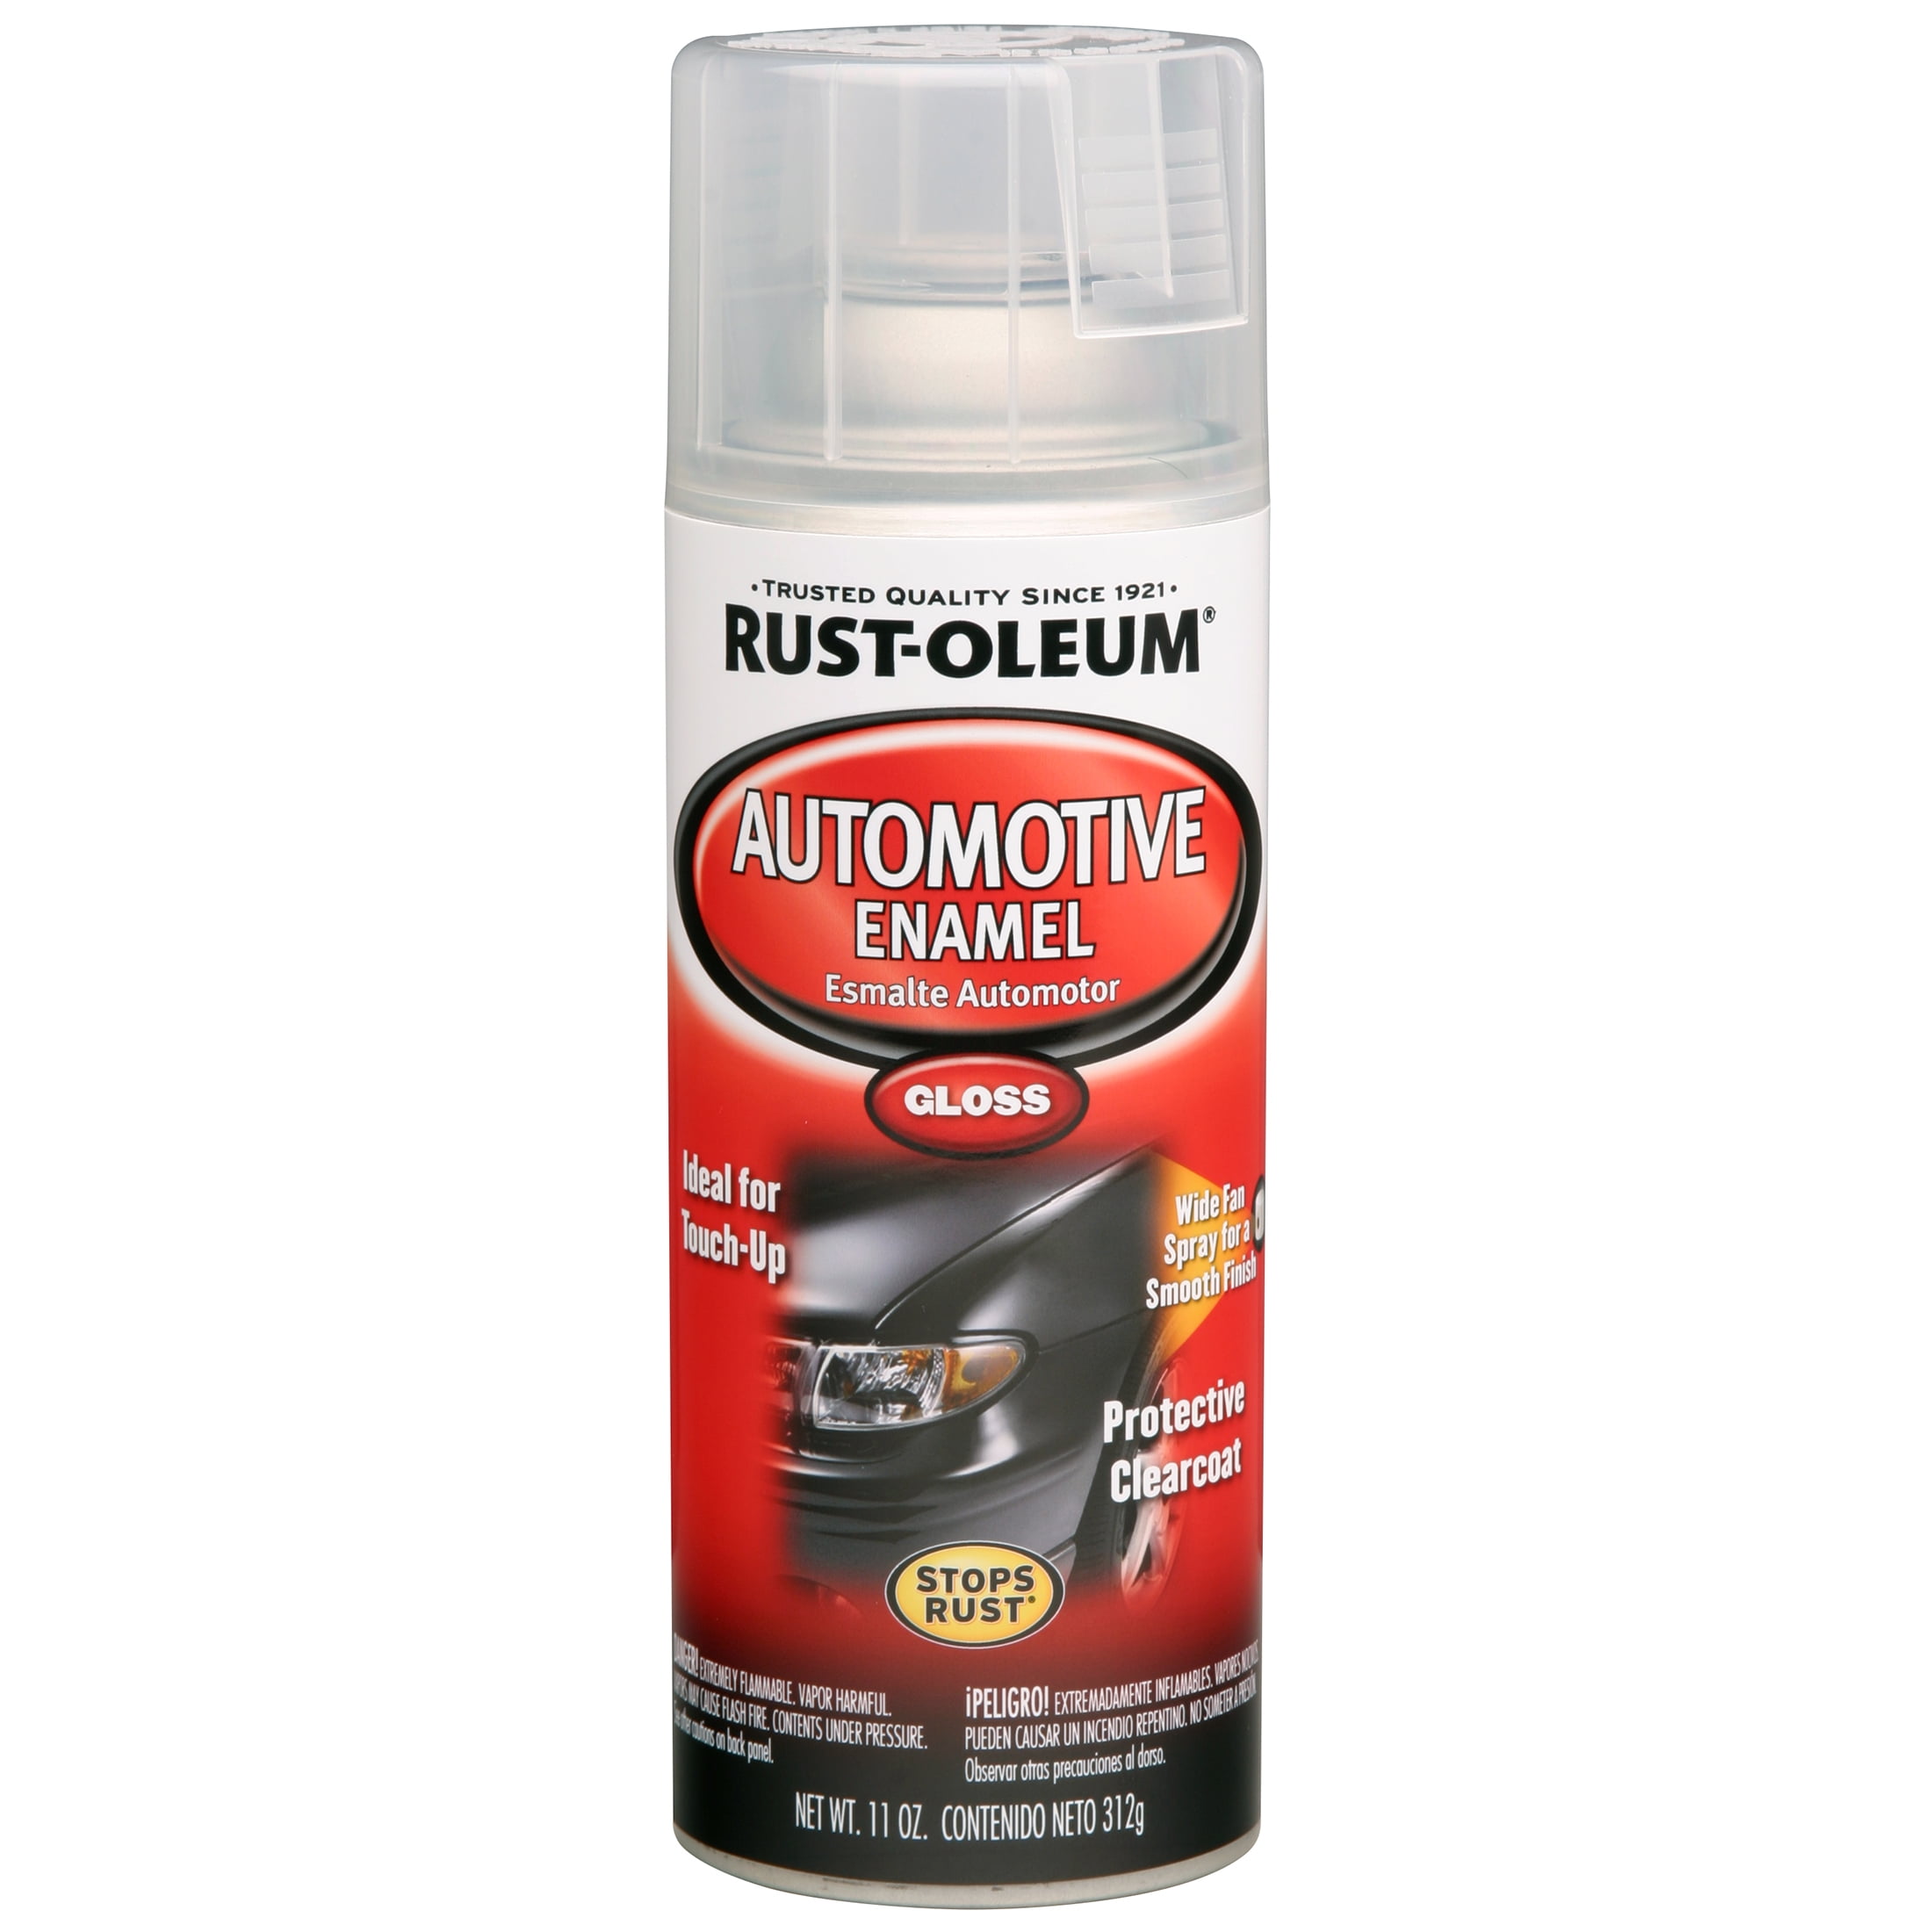  Rust-Oleum 271913 Acrylic Enamel 2X Spray Paint, 12 oz